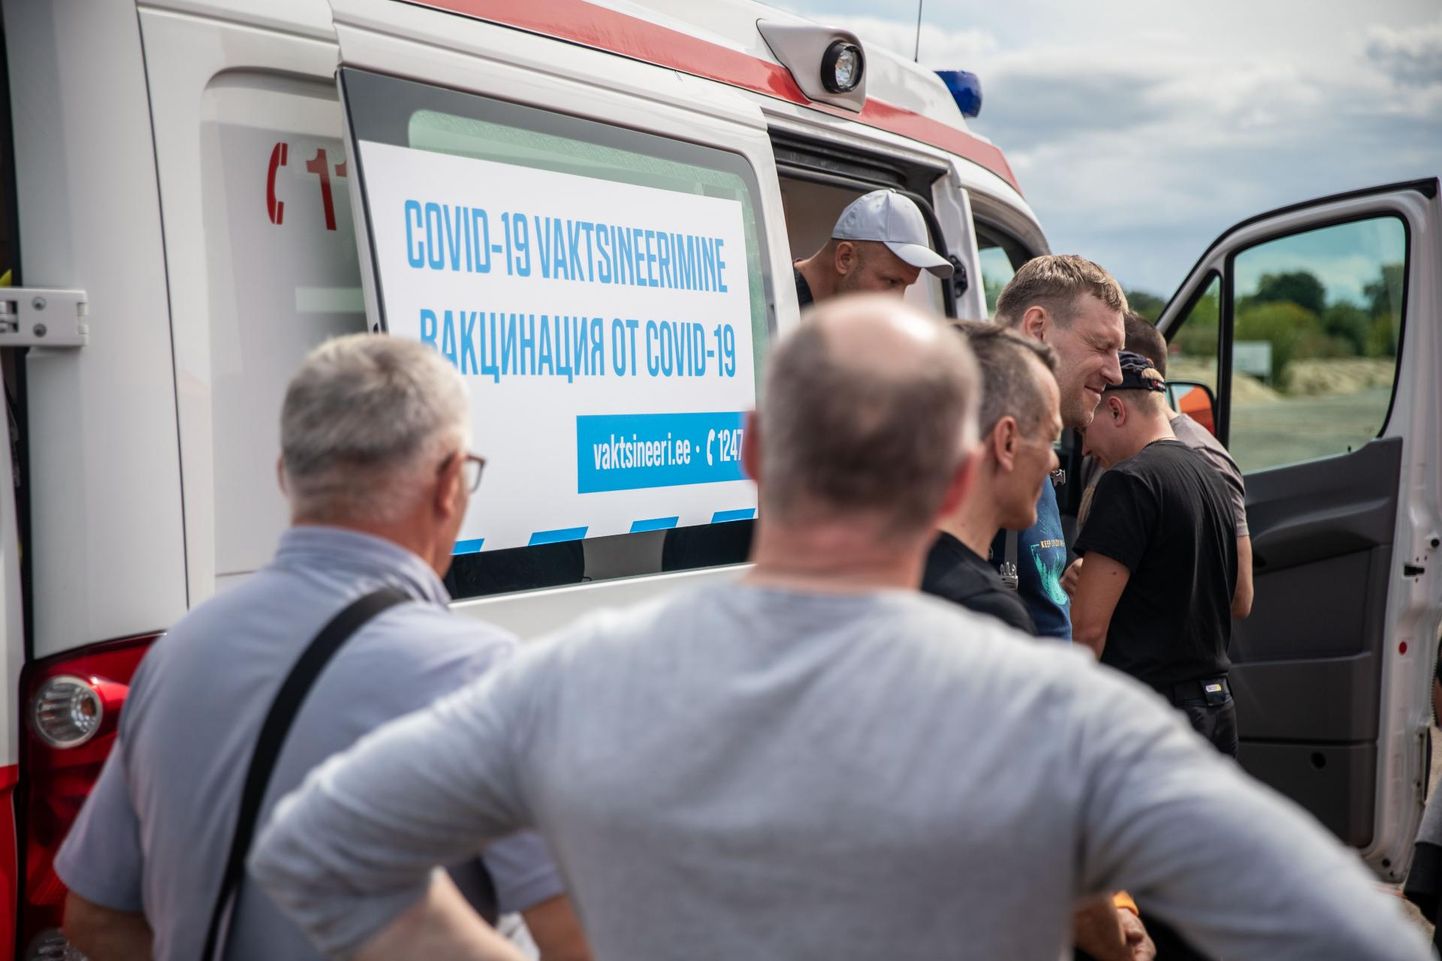 02.08.2021, Tallinn. Vaktsiinikiirabi tutvustus ja Meriko ehitustööliste vaktsineerimine ehitusplatsil.